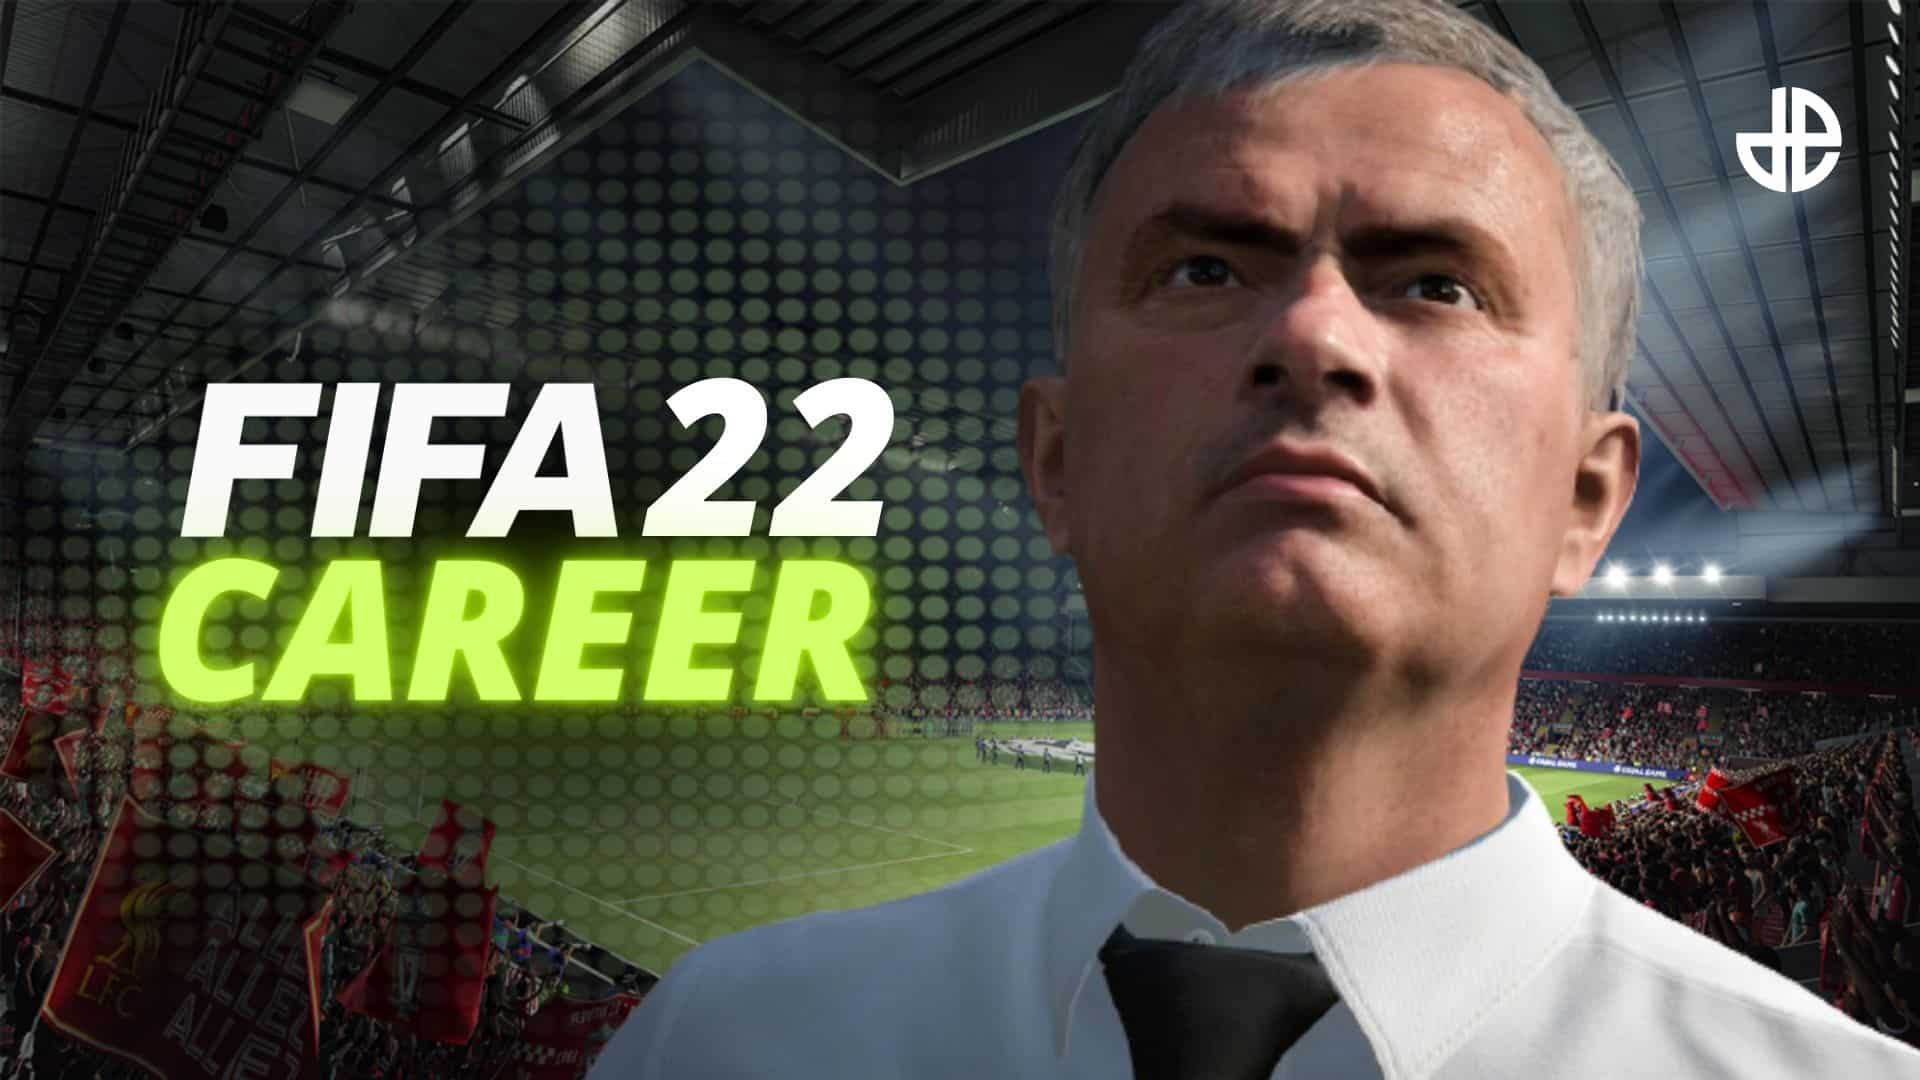 fifa 22 career mode with mourinho